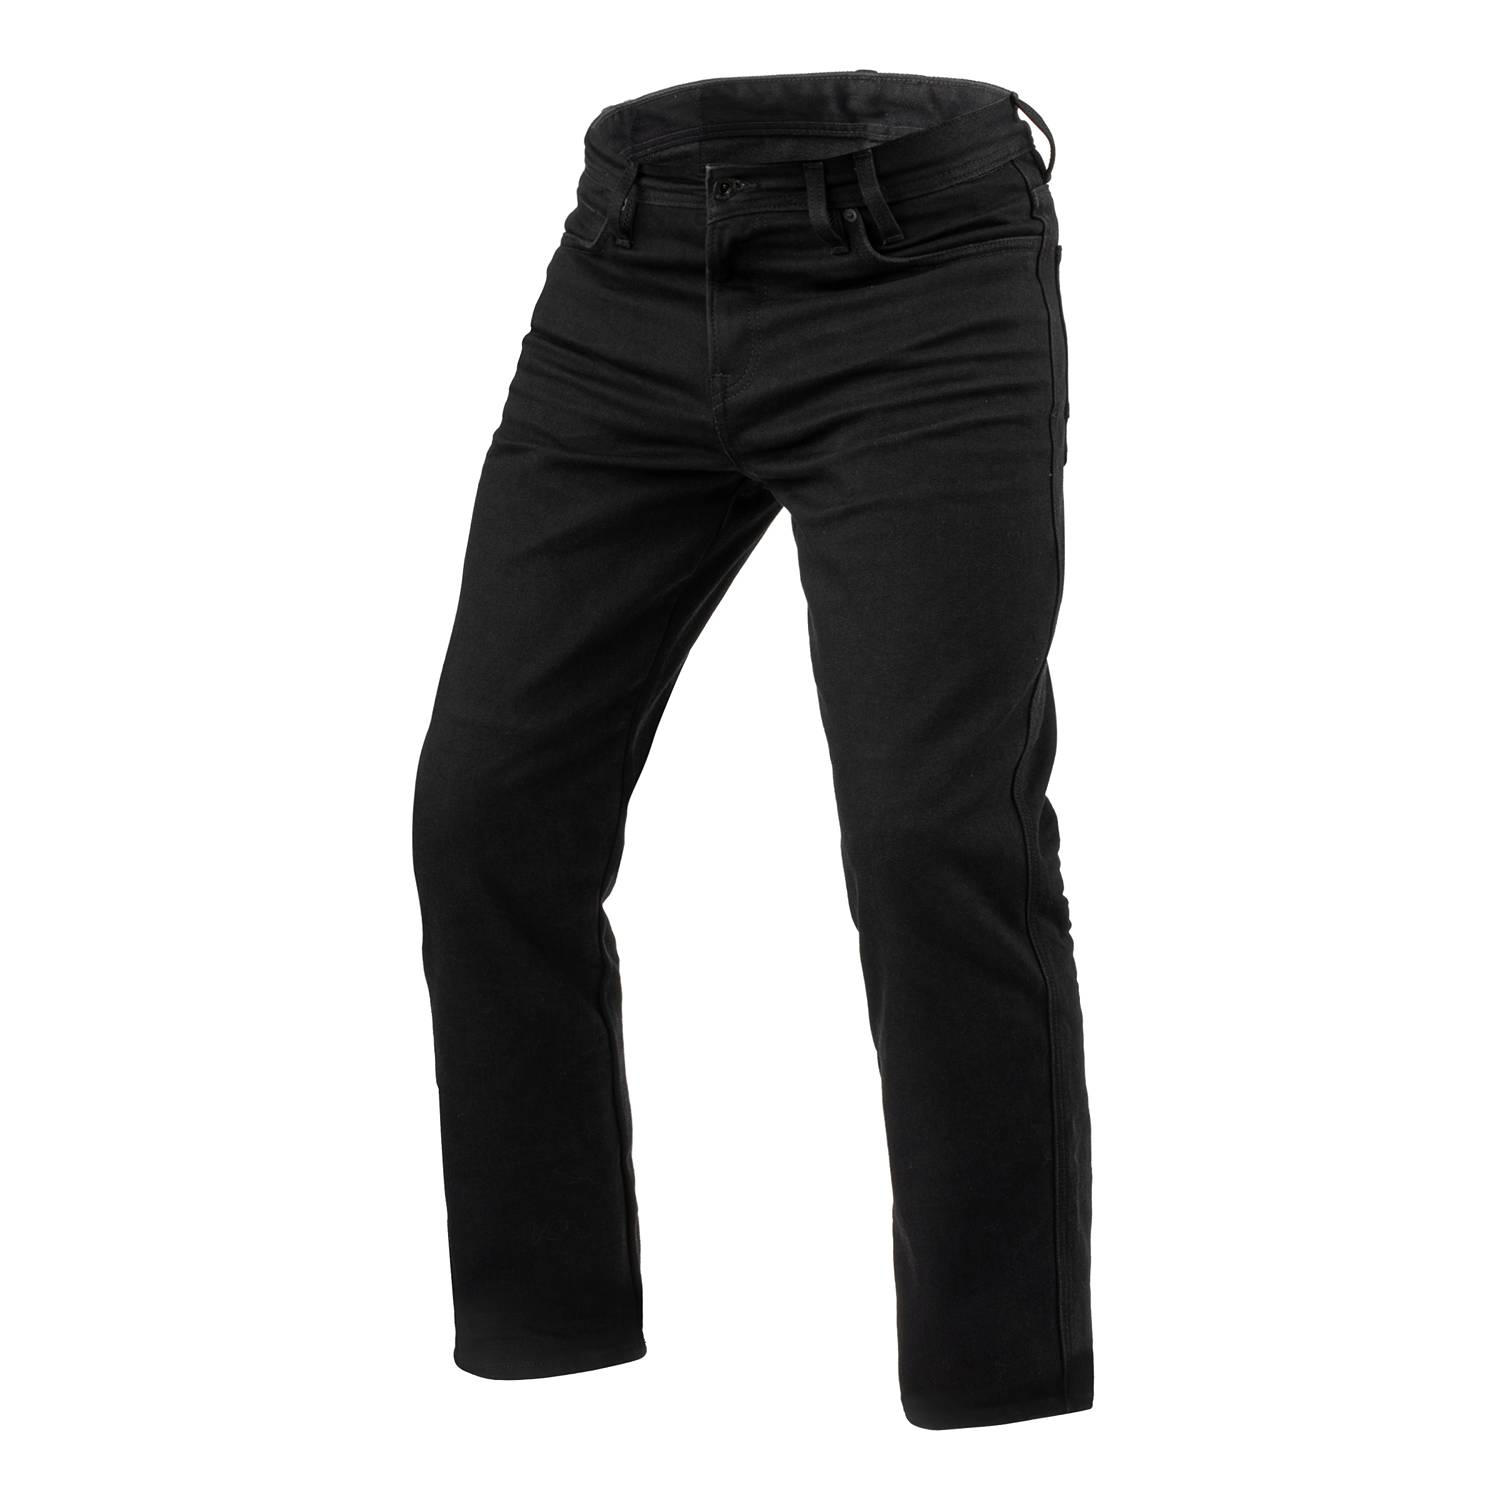 Image of REV'IT! Jeans Lombard 3 RF Black L36 Motorcycle Jeans Size L36/W38 EN